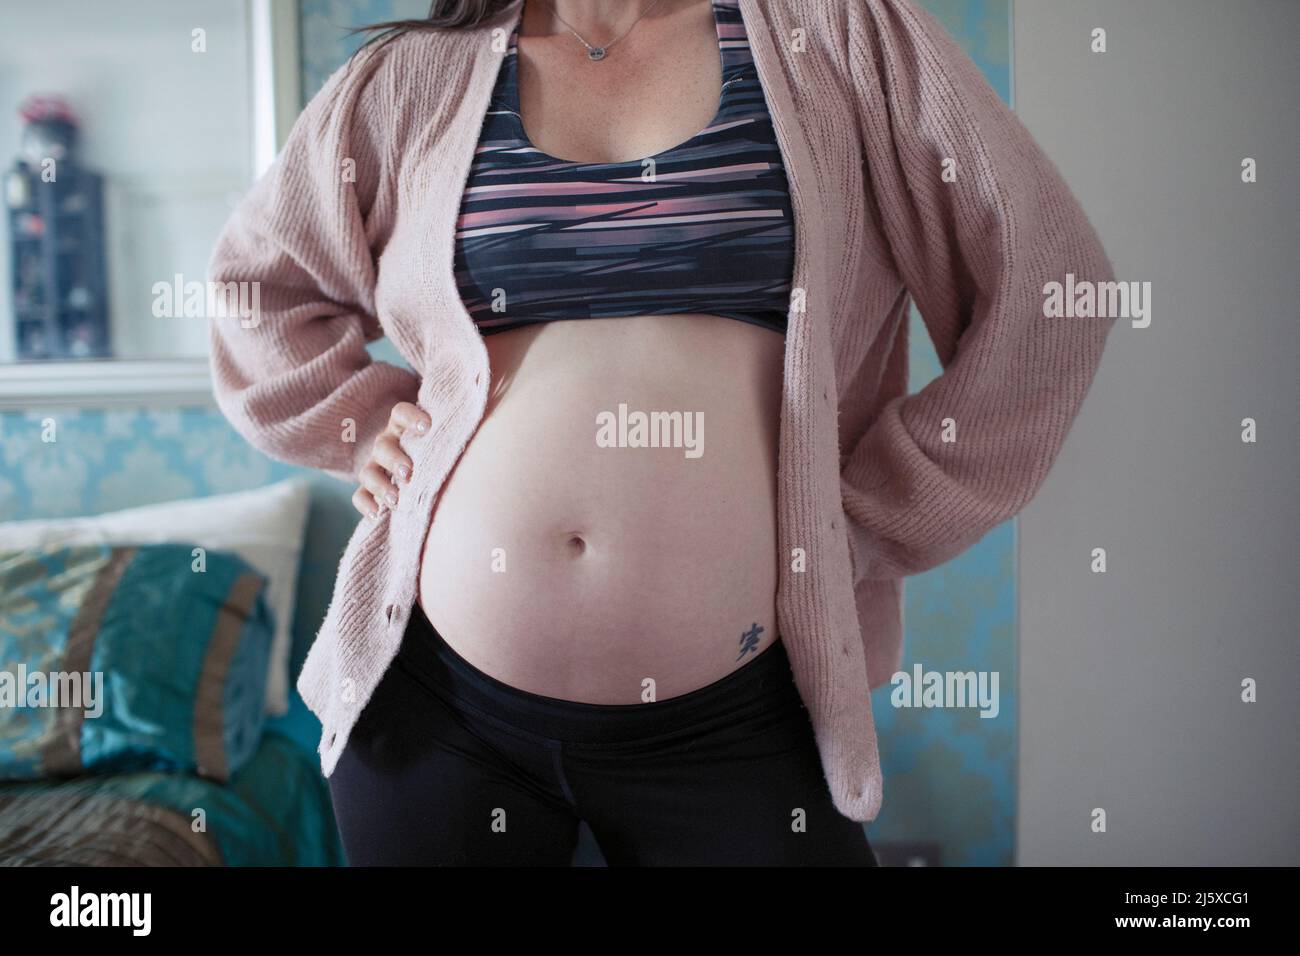 Femme enceinte en soutien-gorge de sport Banque D'Images